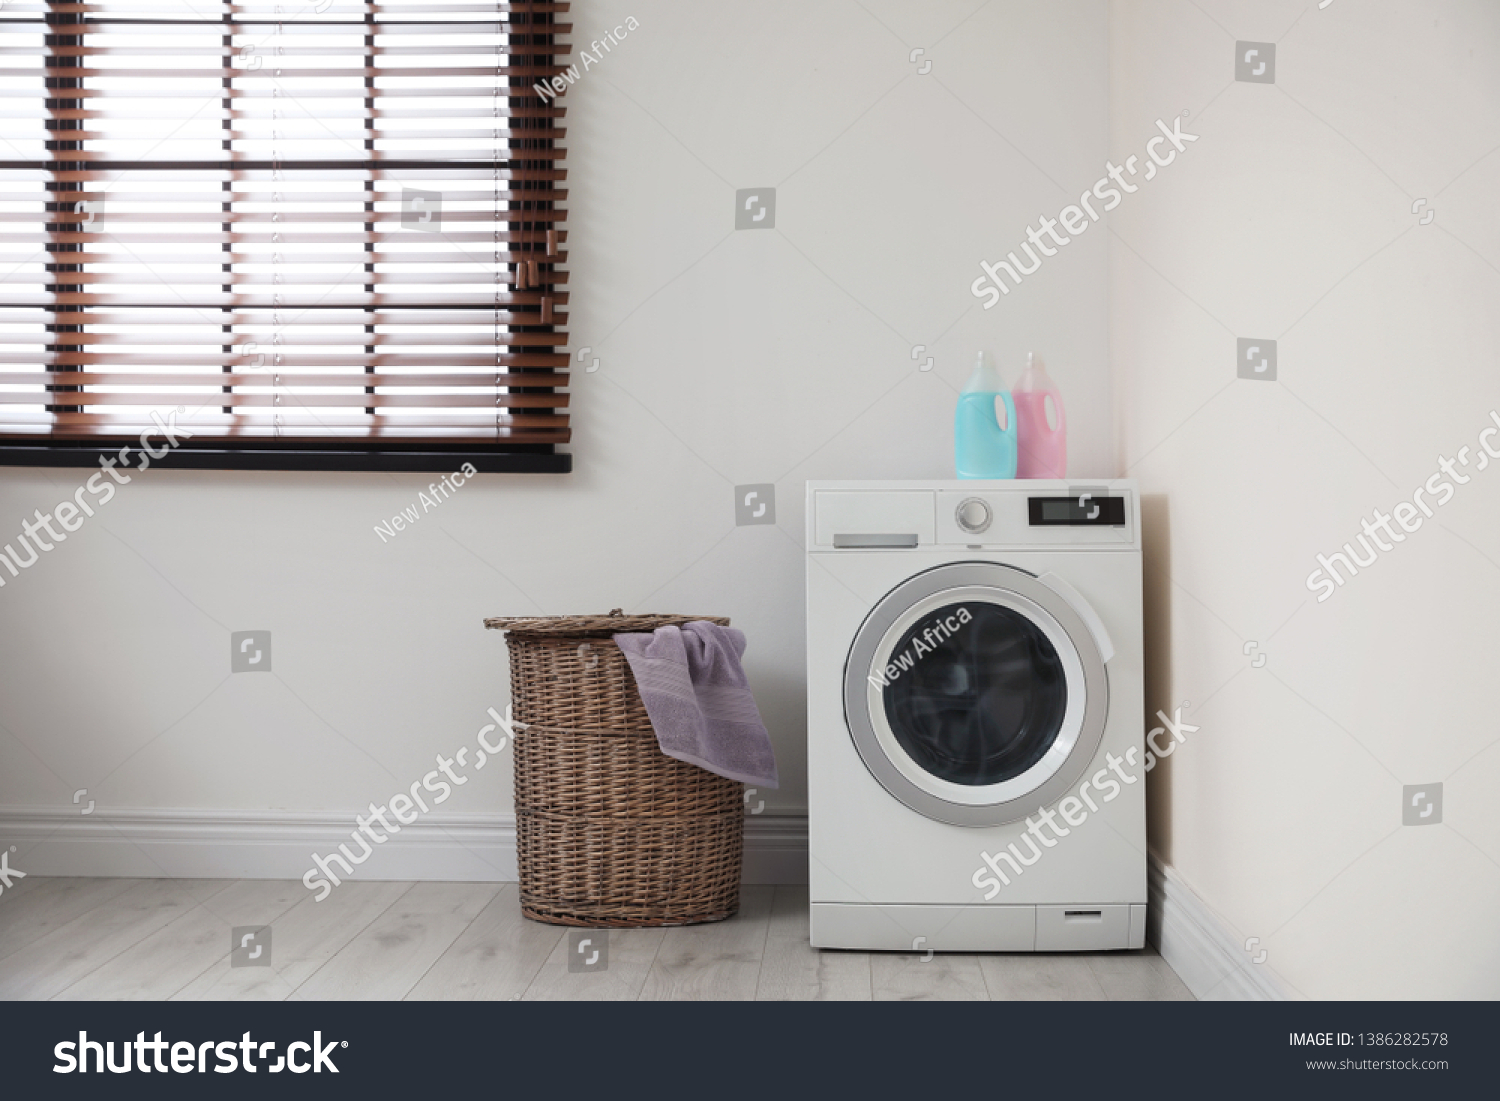 Modern washing machine and laundry basket indoors #1386282578